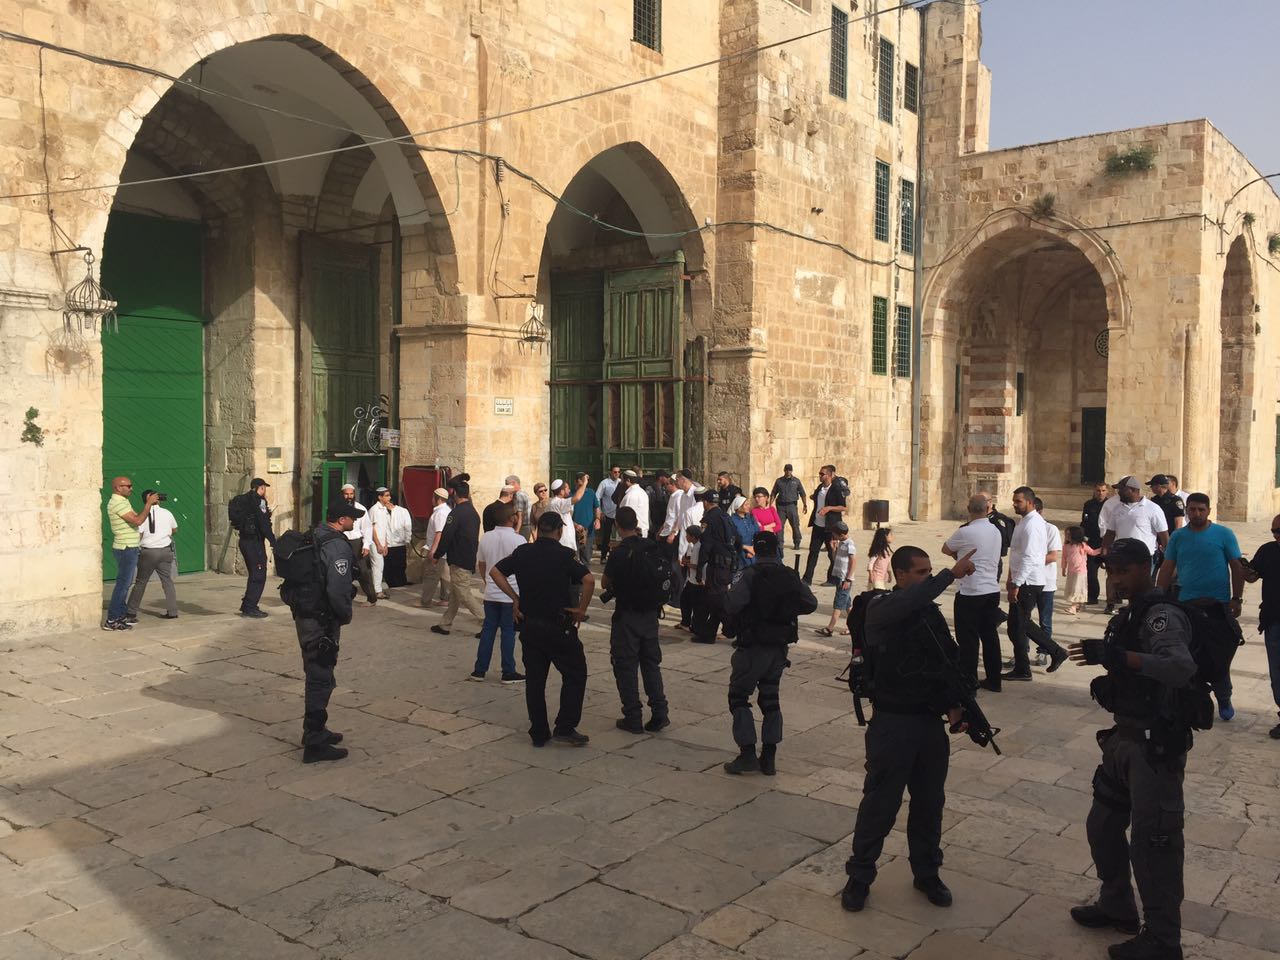 حكومة الاحتلال تزعم: لا تغيير في الوضع القائم بالمسجد الأقصى